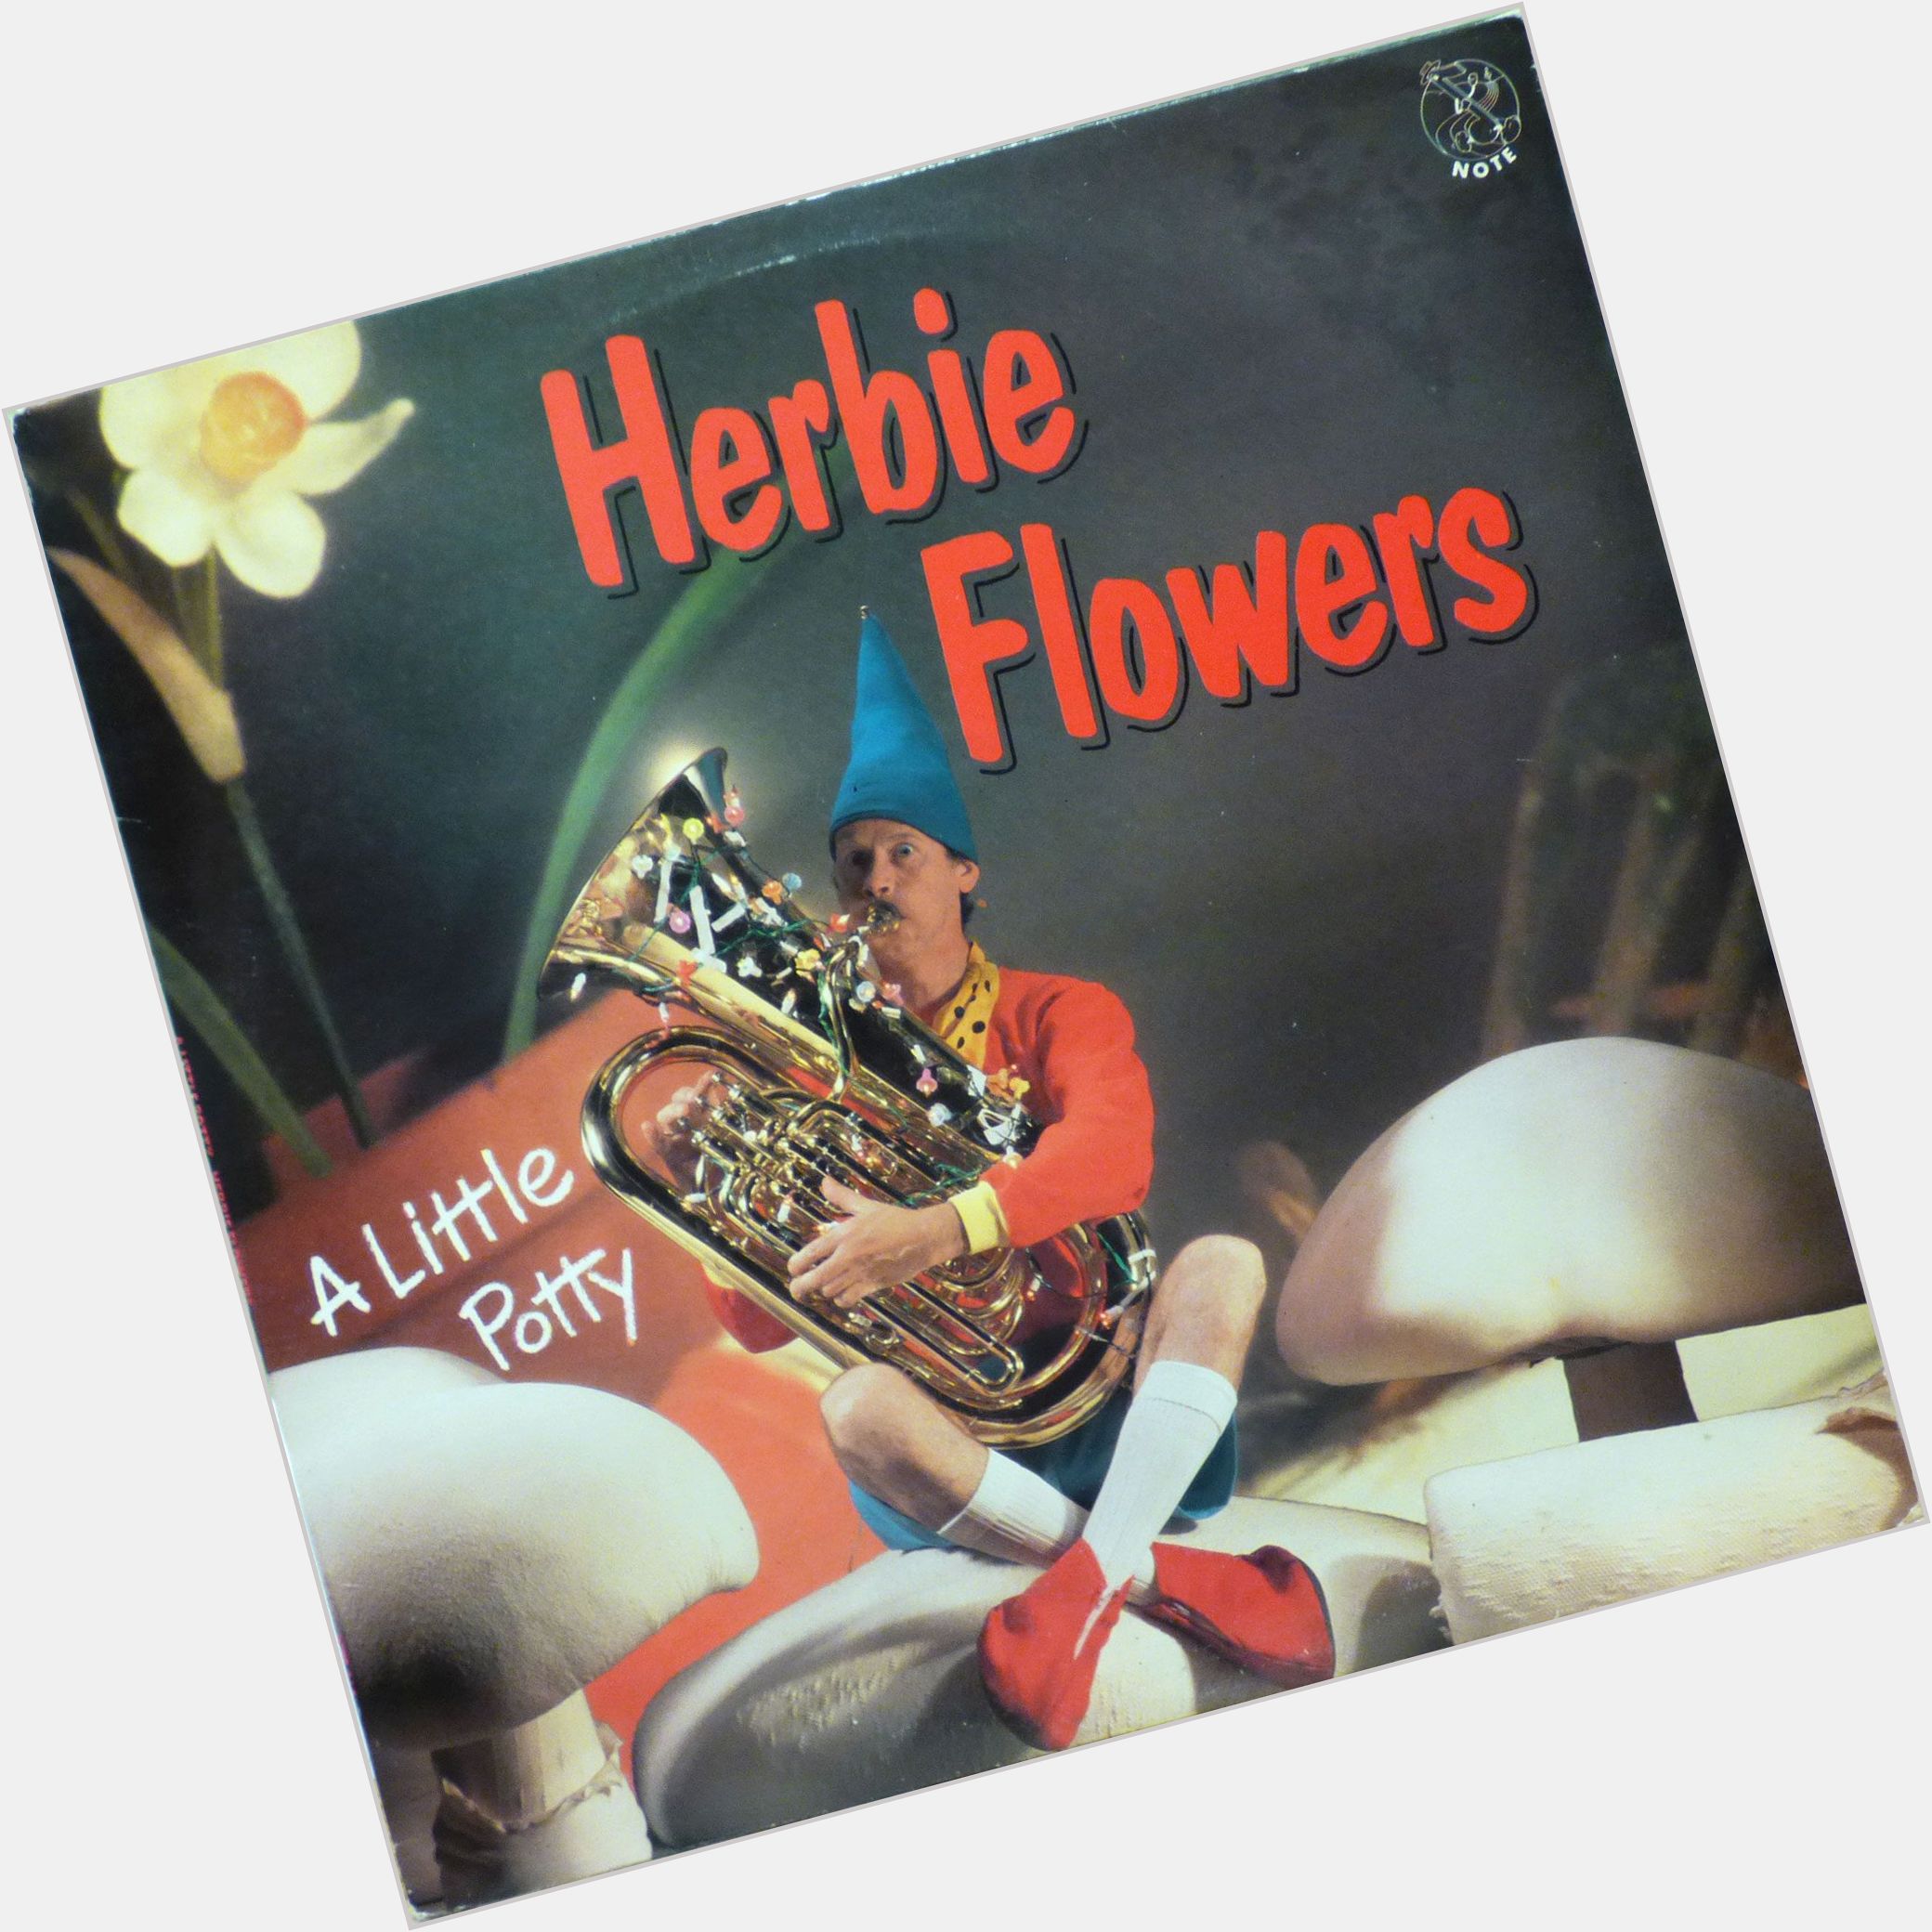 Herbie Flowers dating 3